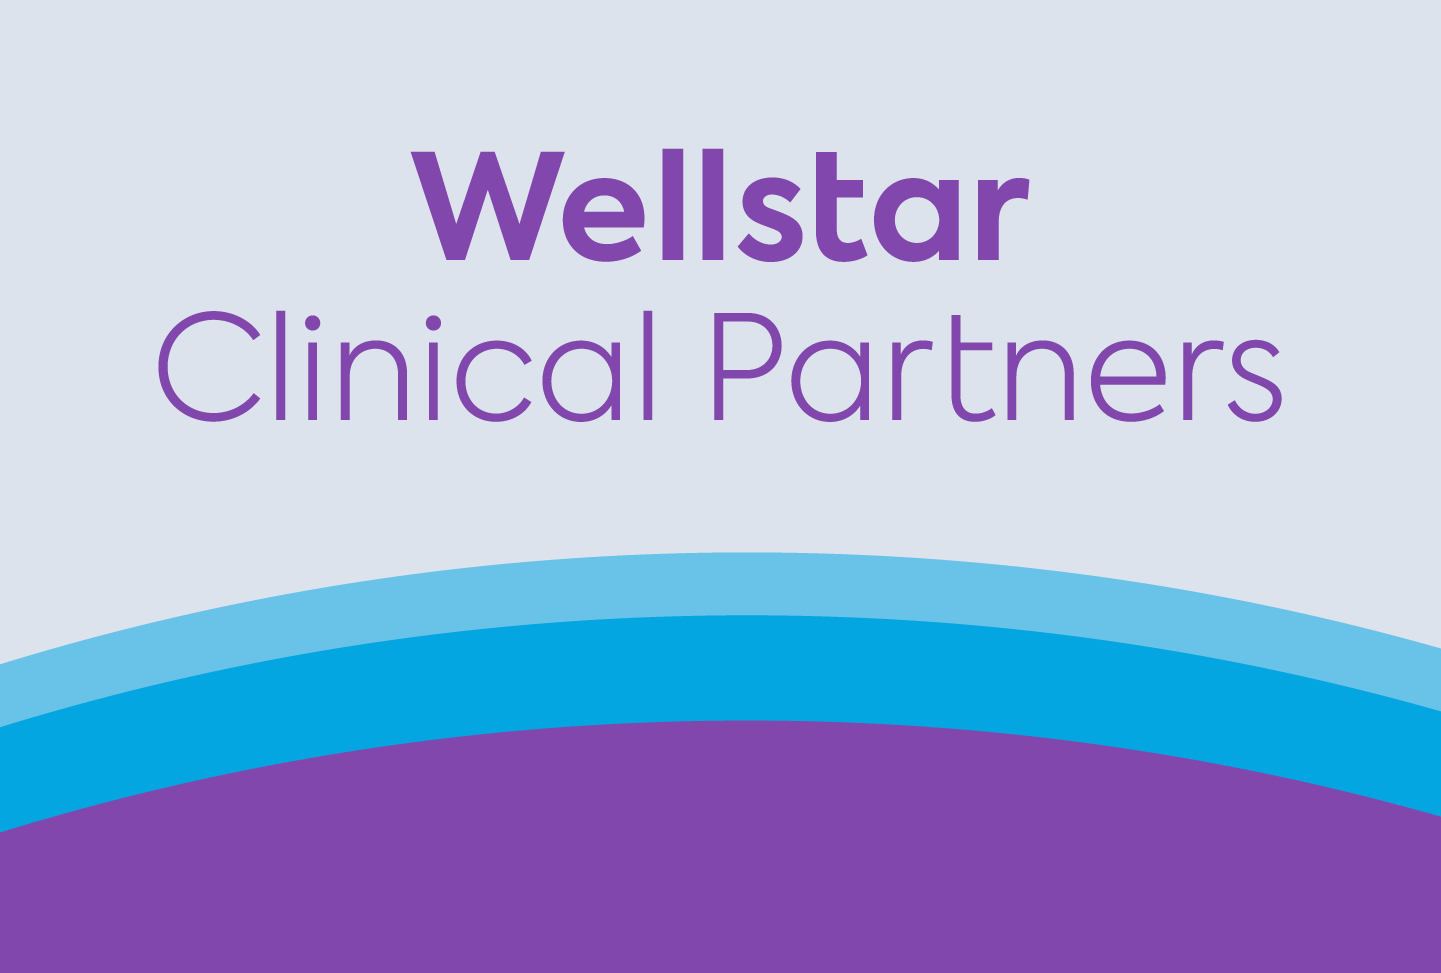 text reads "Wellstar Clinical Partners"